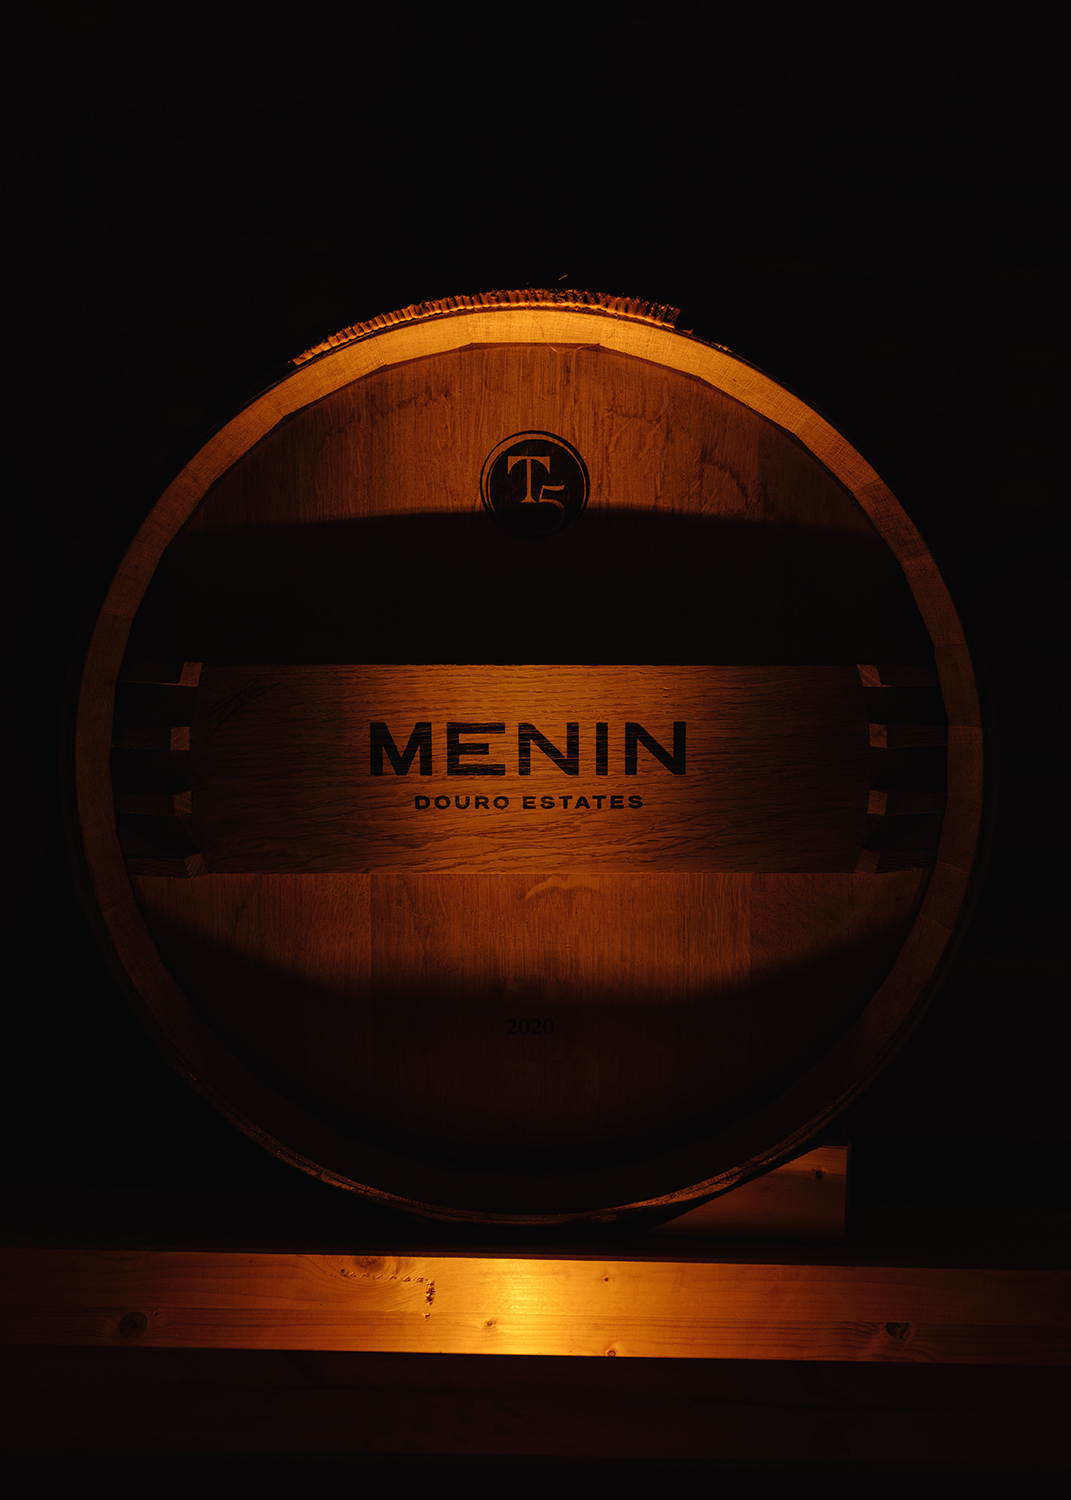 Menin Touriga Nacional - MENIN Wine Company